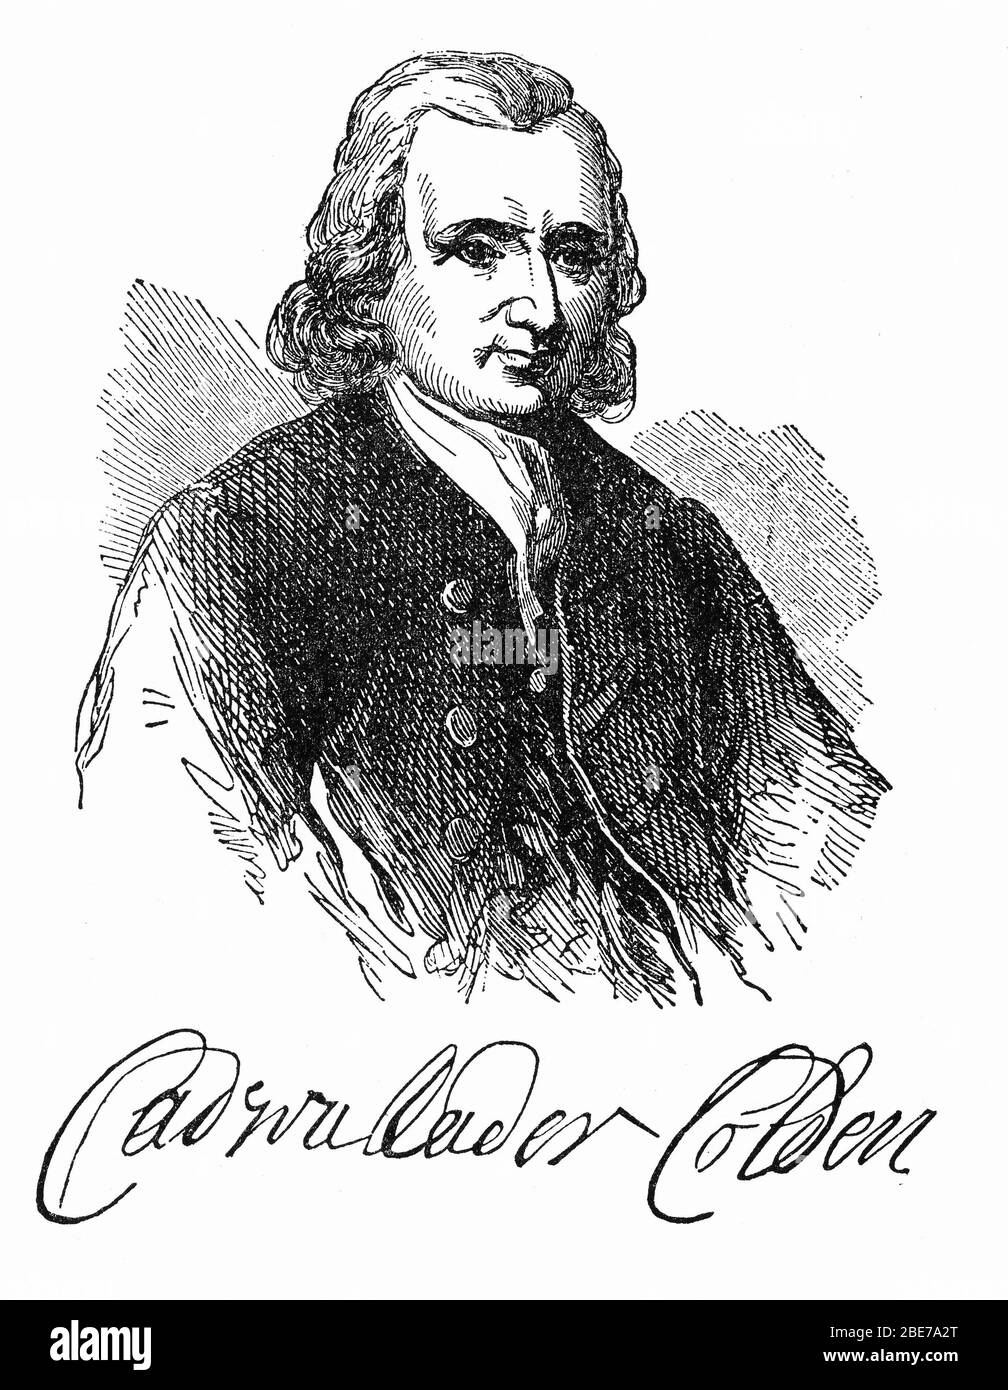 Cadwallader David Colden (1688 – 1776) médico, científico natural, vicegobernador y gobernador interino de la Provincia de Nueva York. Foto de stock